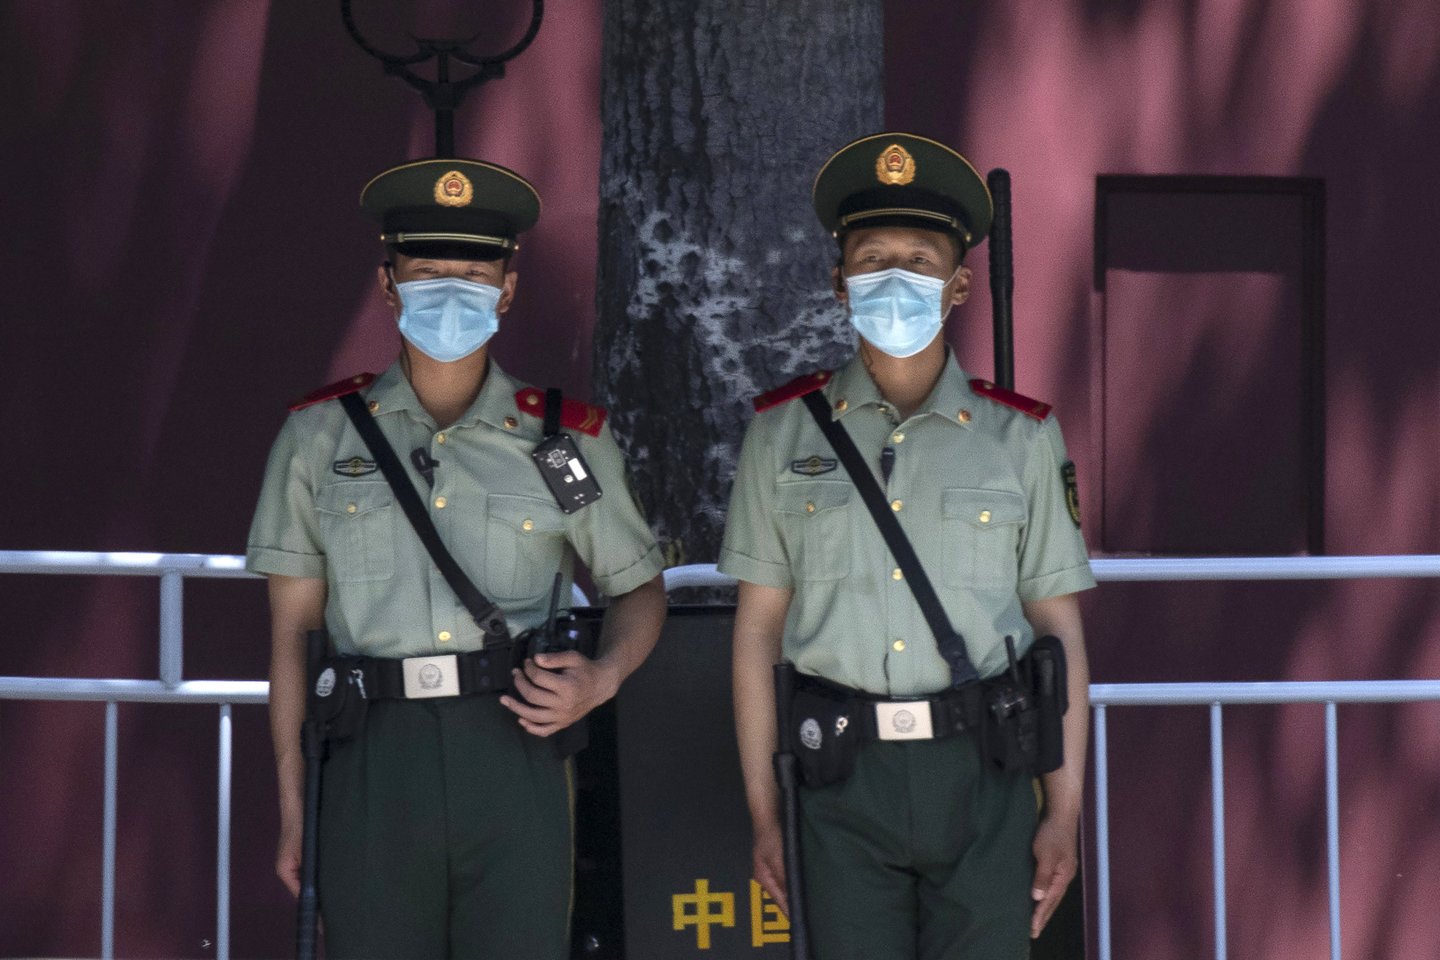  Pietų Kinijoje mokyklos apsaugininkas ketvirtadienį ryte peiliu sužalojo mažiausiai 39 žmonės per išpuolį prieš ikimokyklinę grupę, pranešė valstybinė žiniasklaida.<br> AP/Scanpix nuotr.